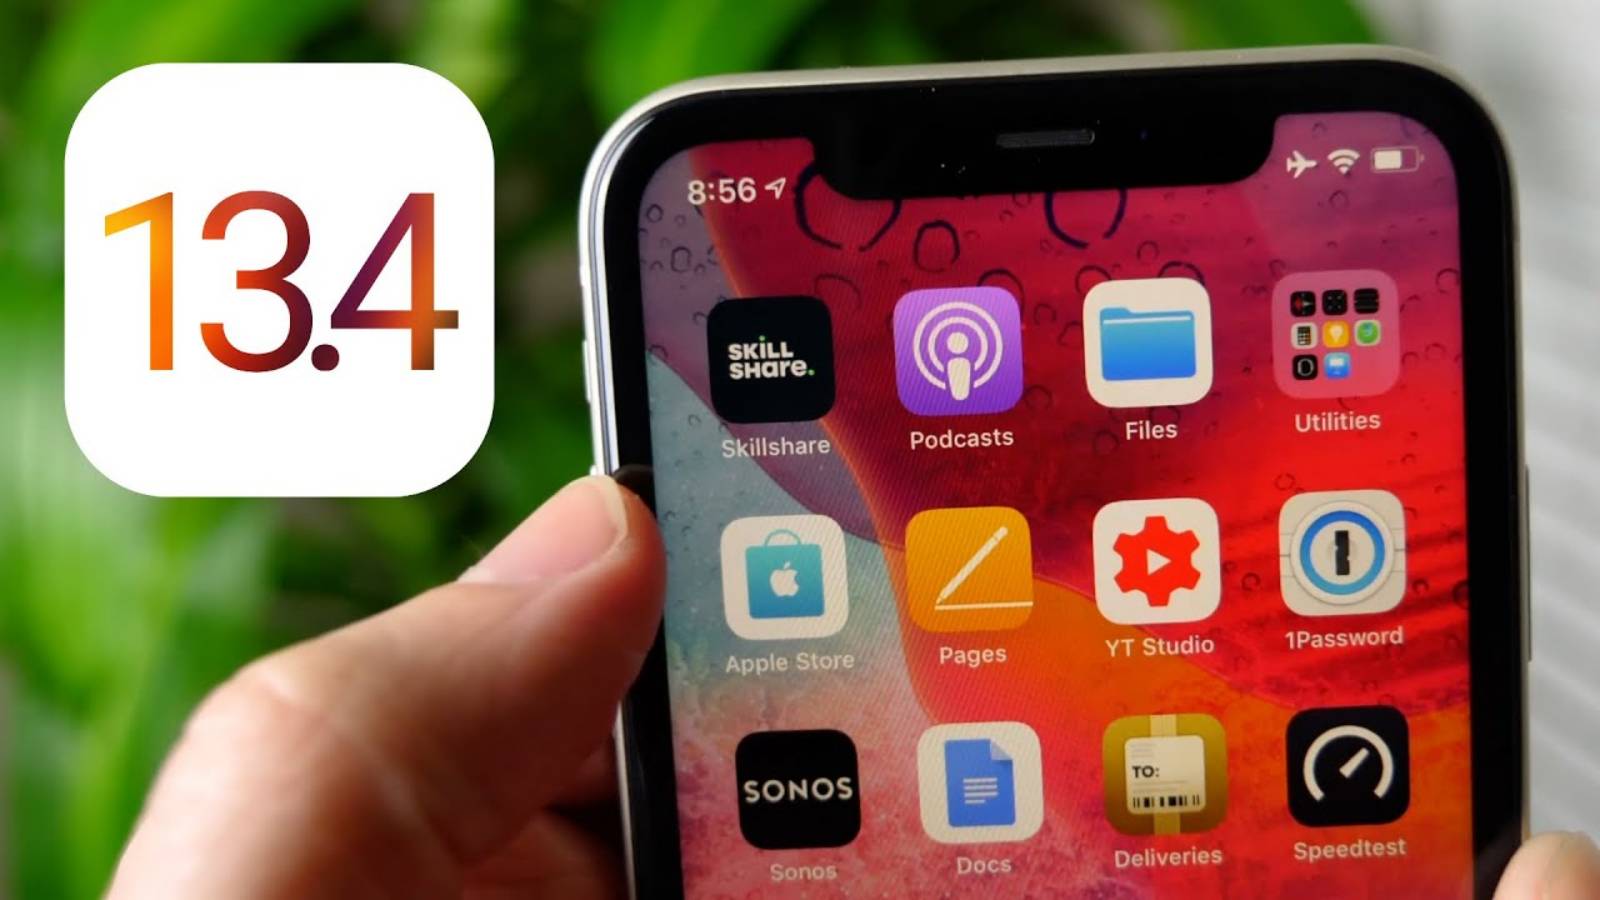 iOS 13.4 icloud folder sharing